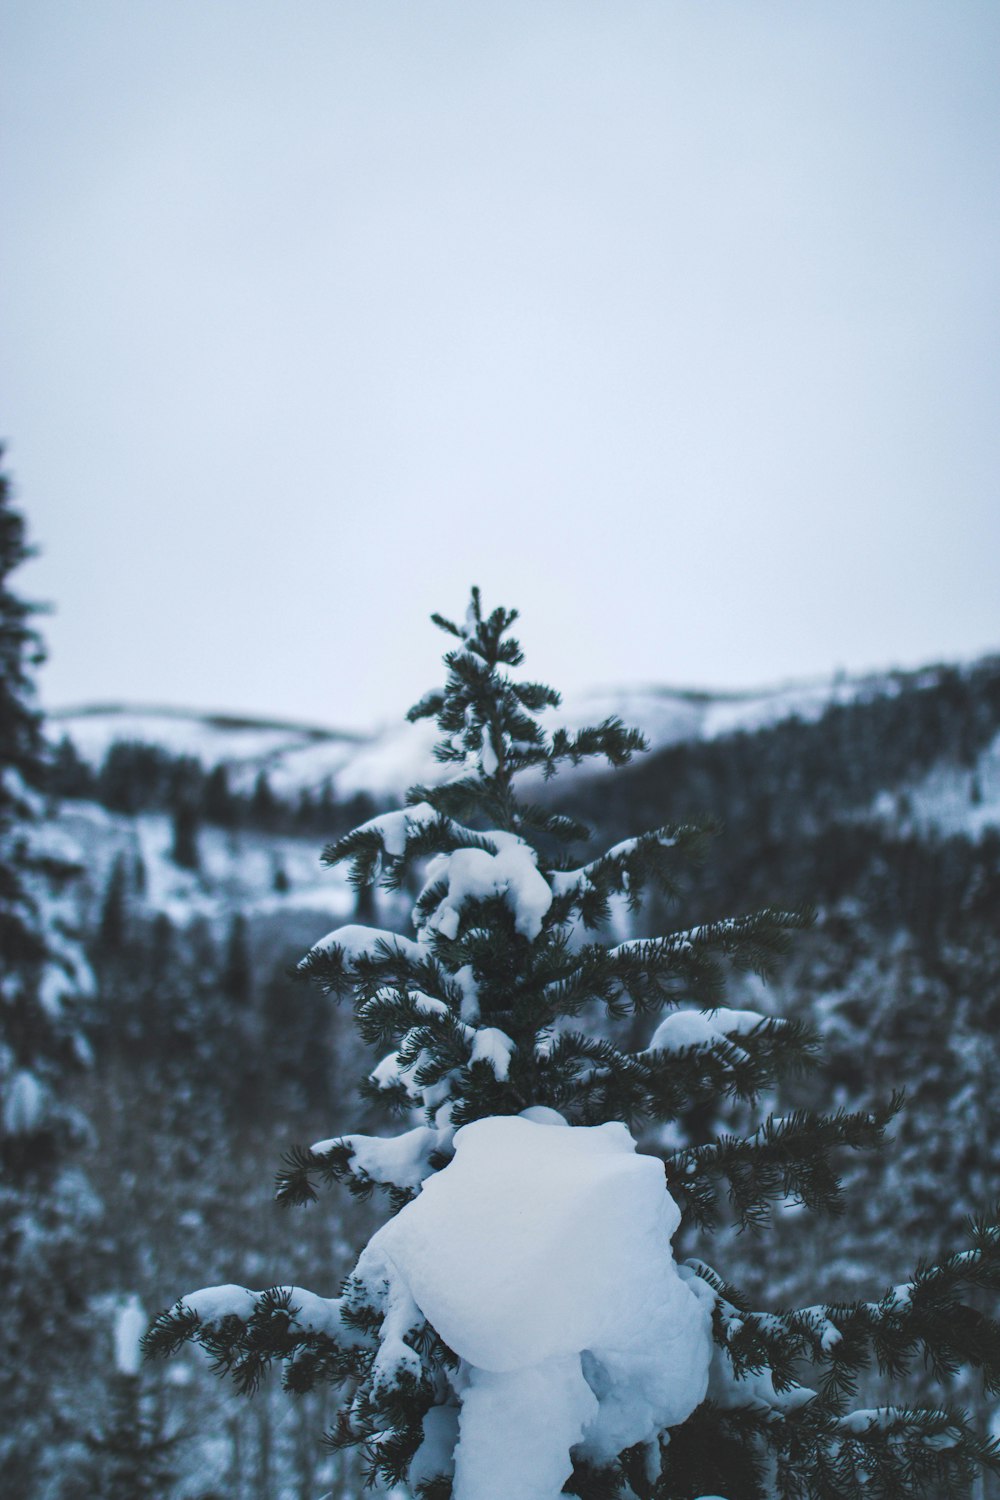 albero con fotografia di neve